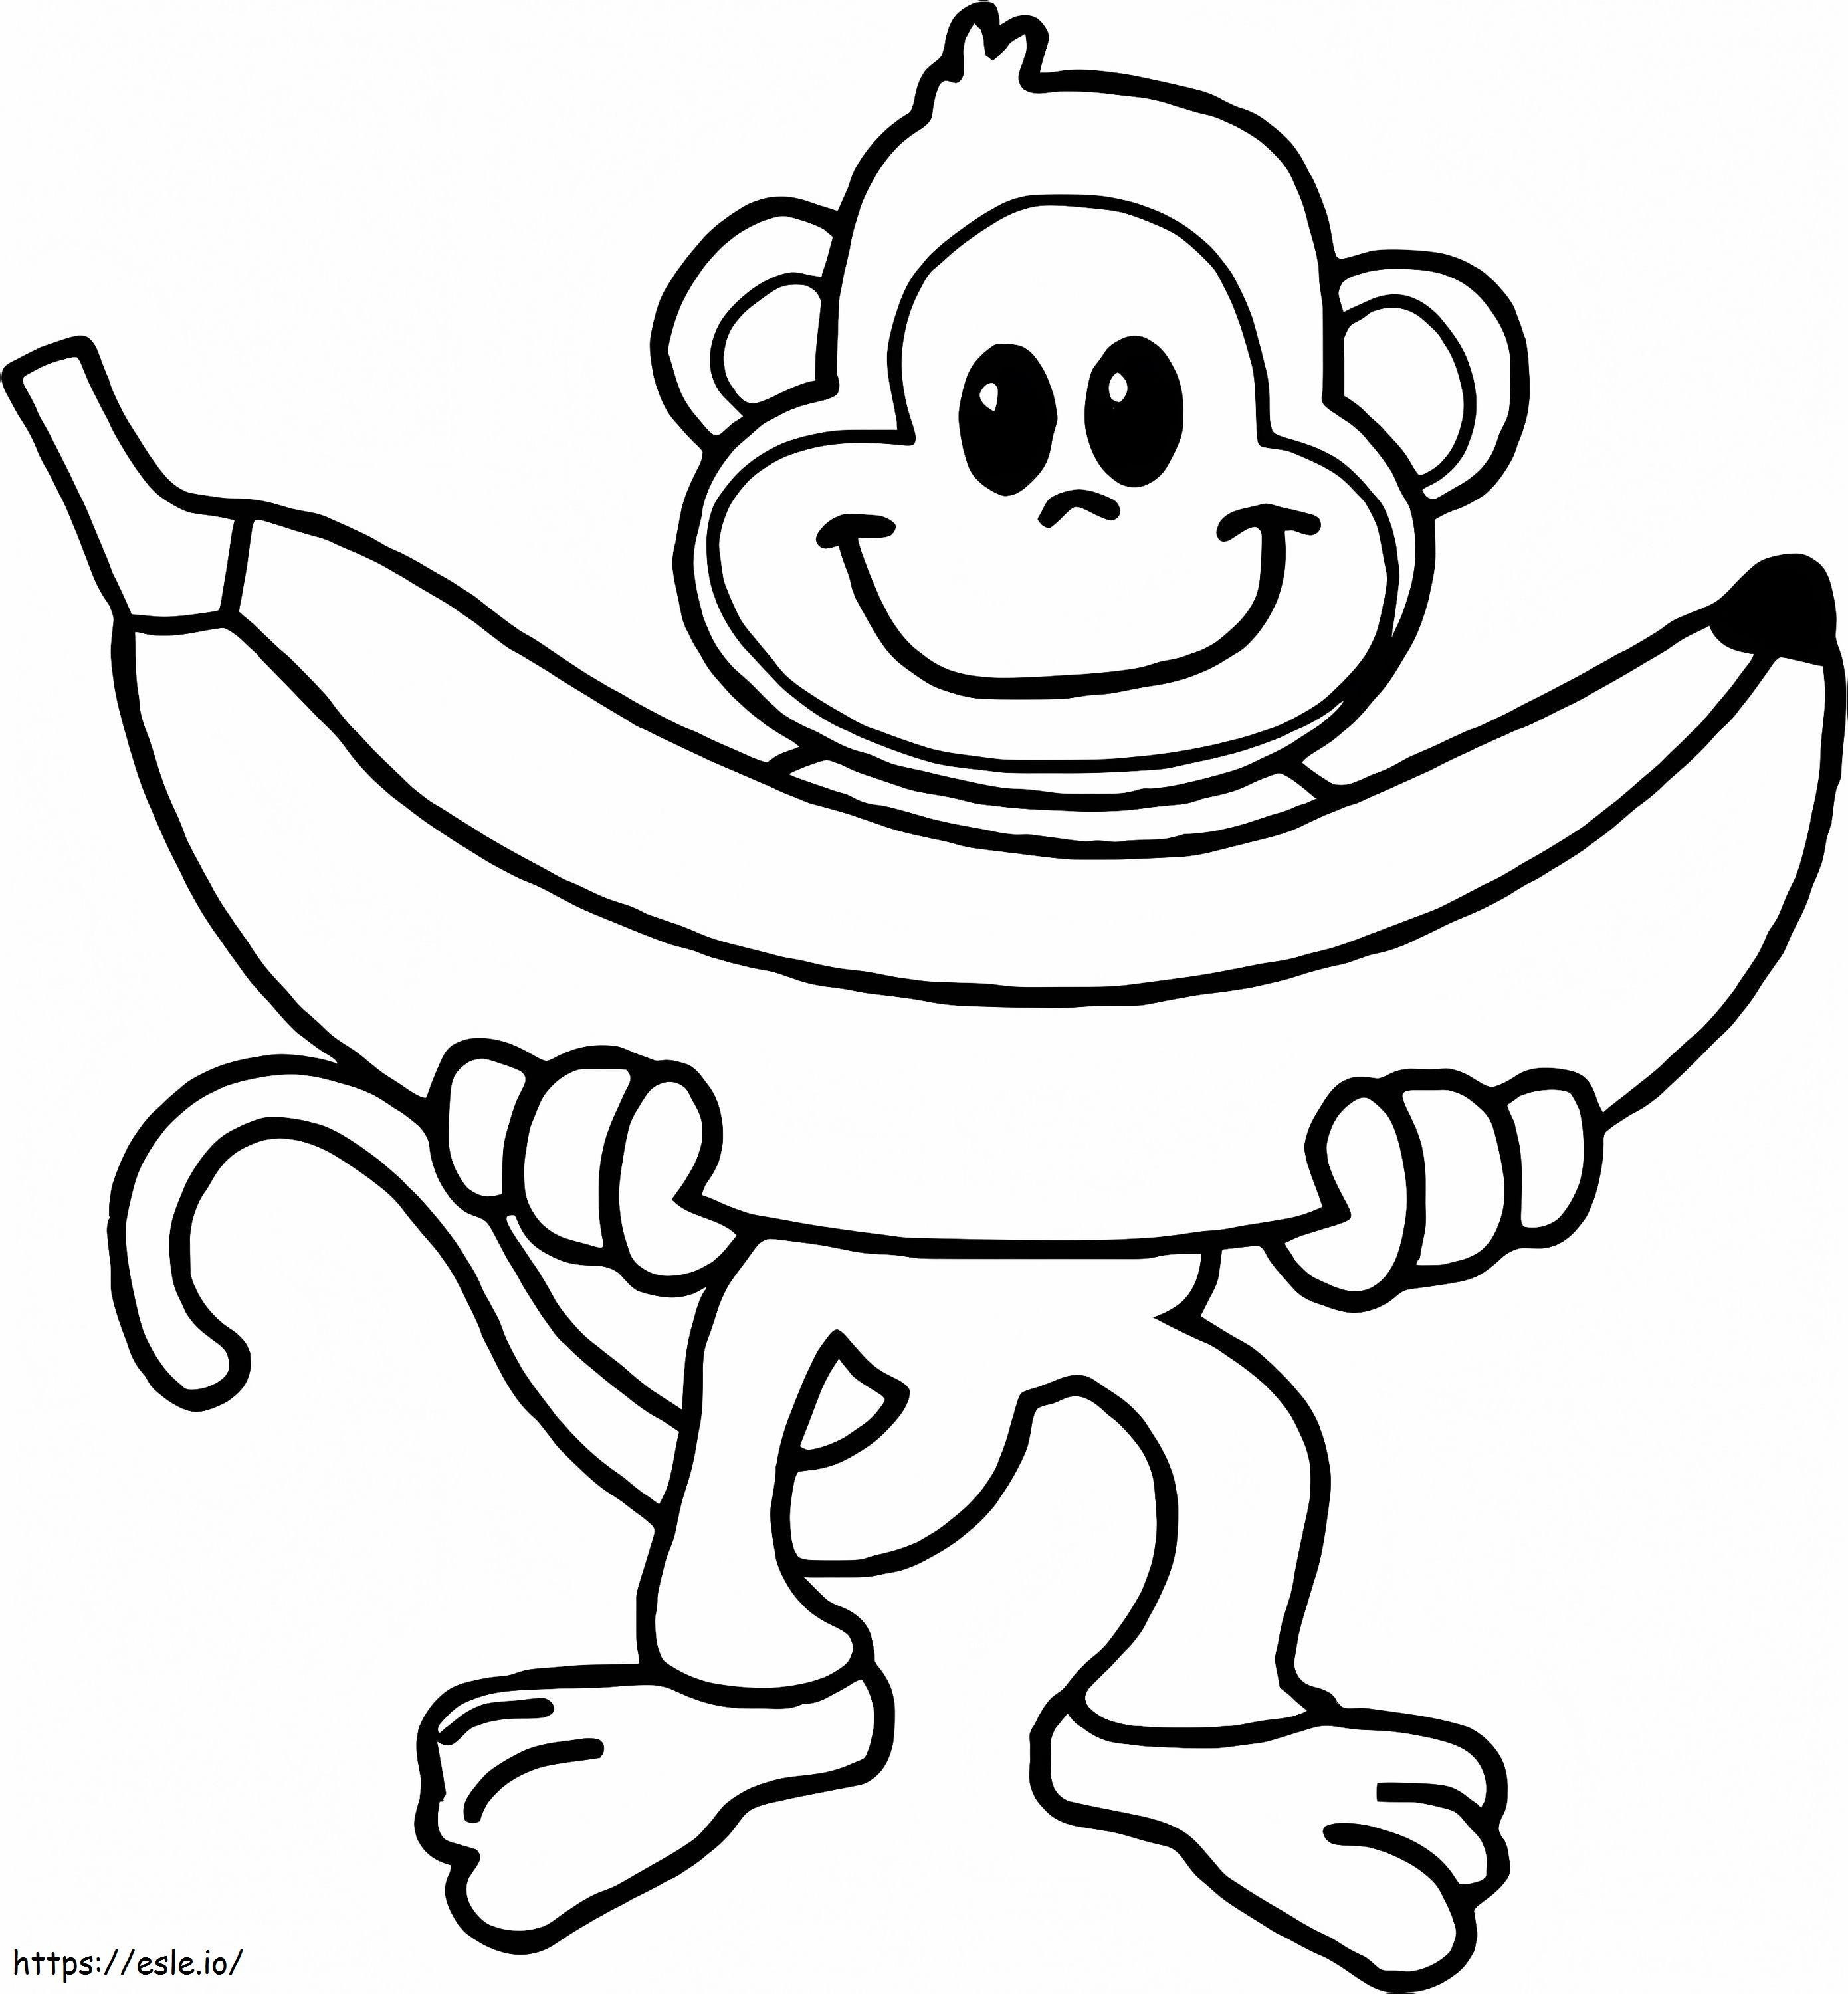 Maimuță ținând în mână o banană mare de colorat